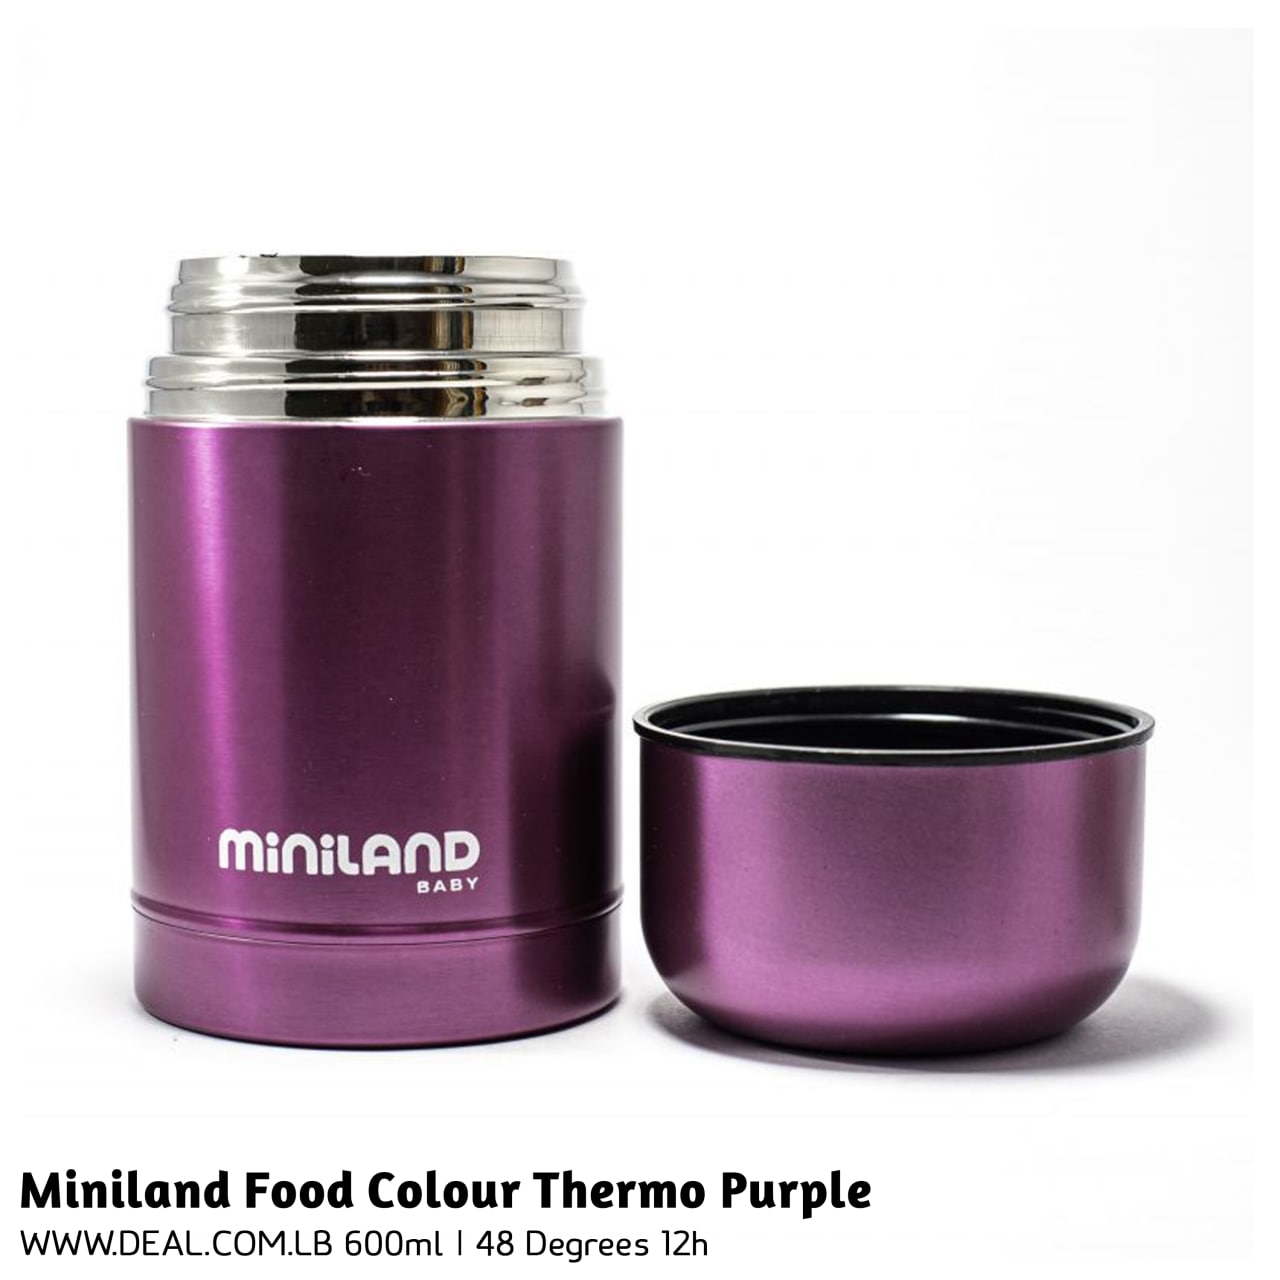 Miniland Food Colour Thermo Purple